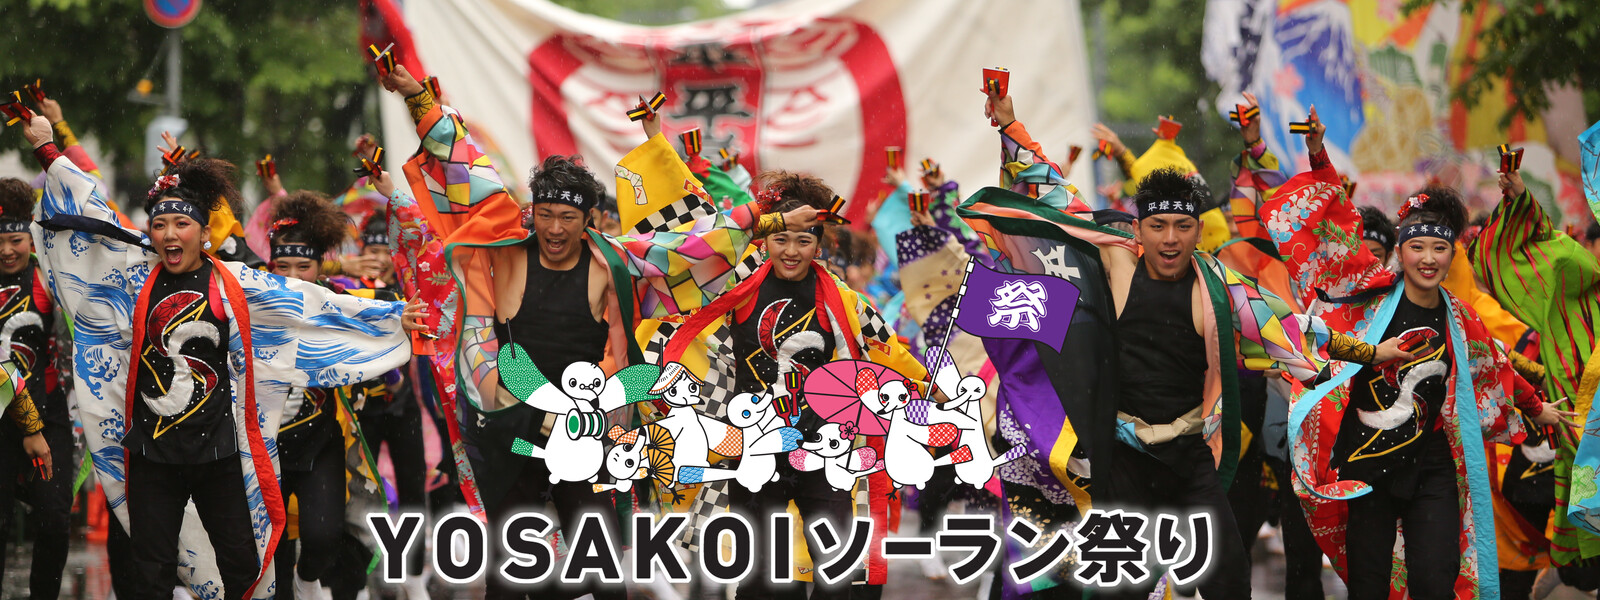 YOSAKOIソーラン祭り 動画